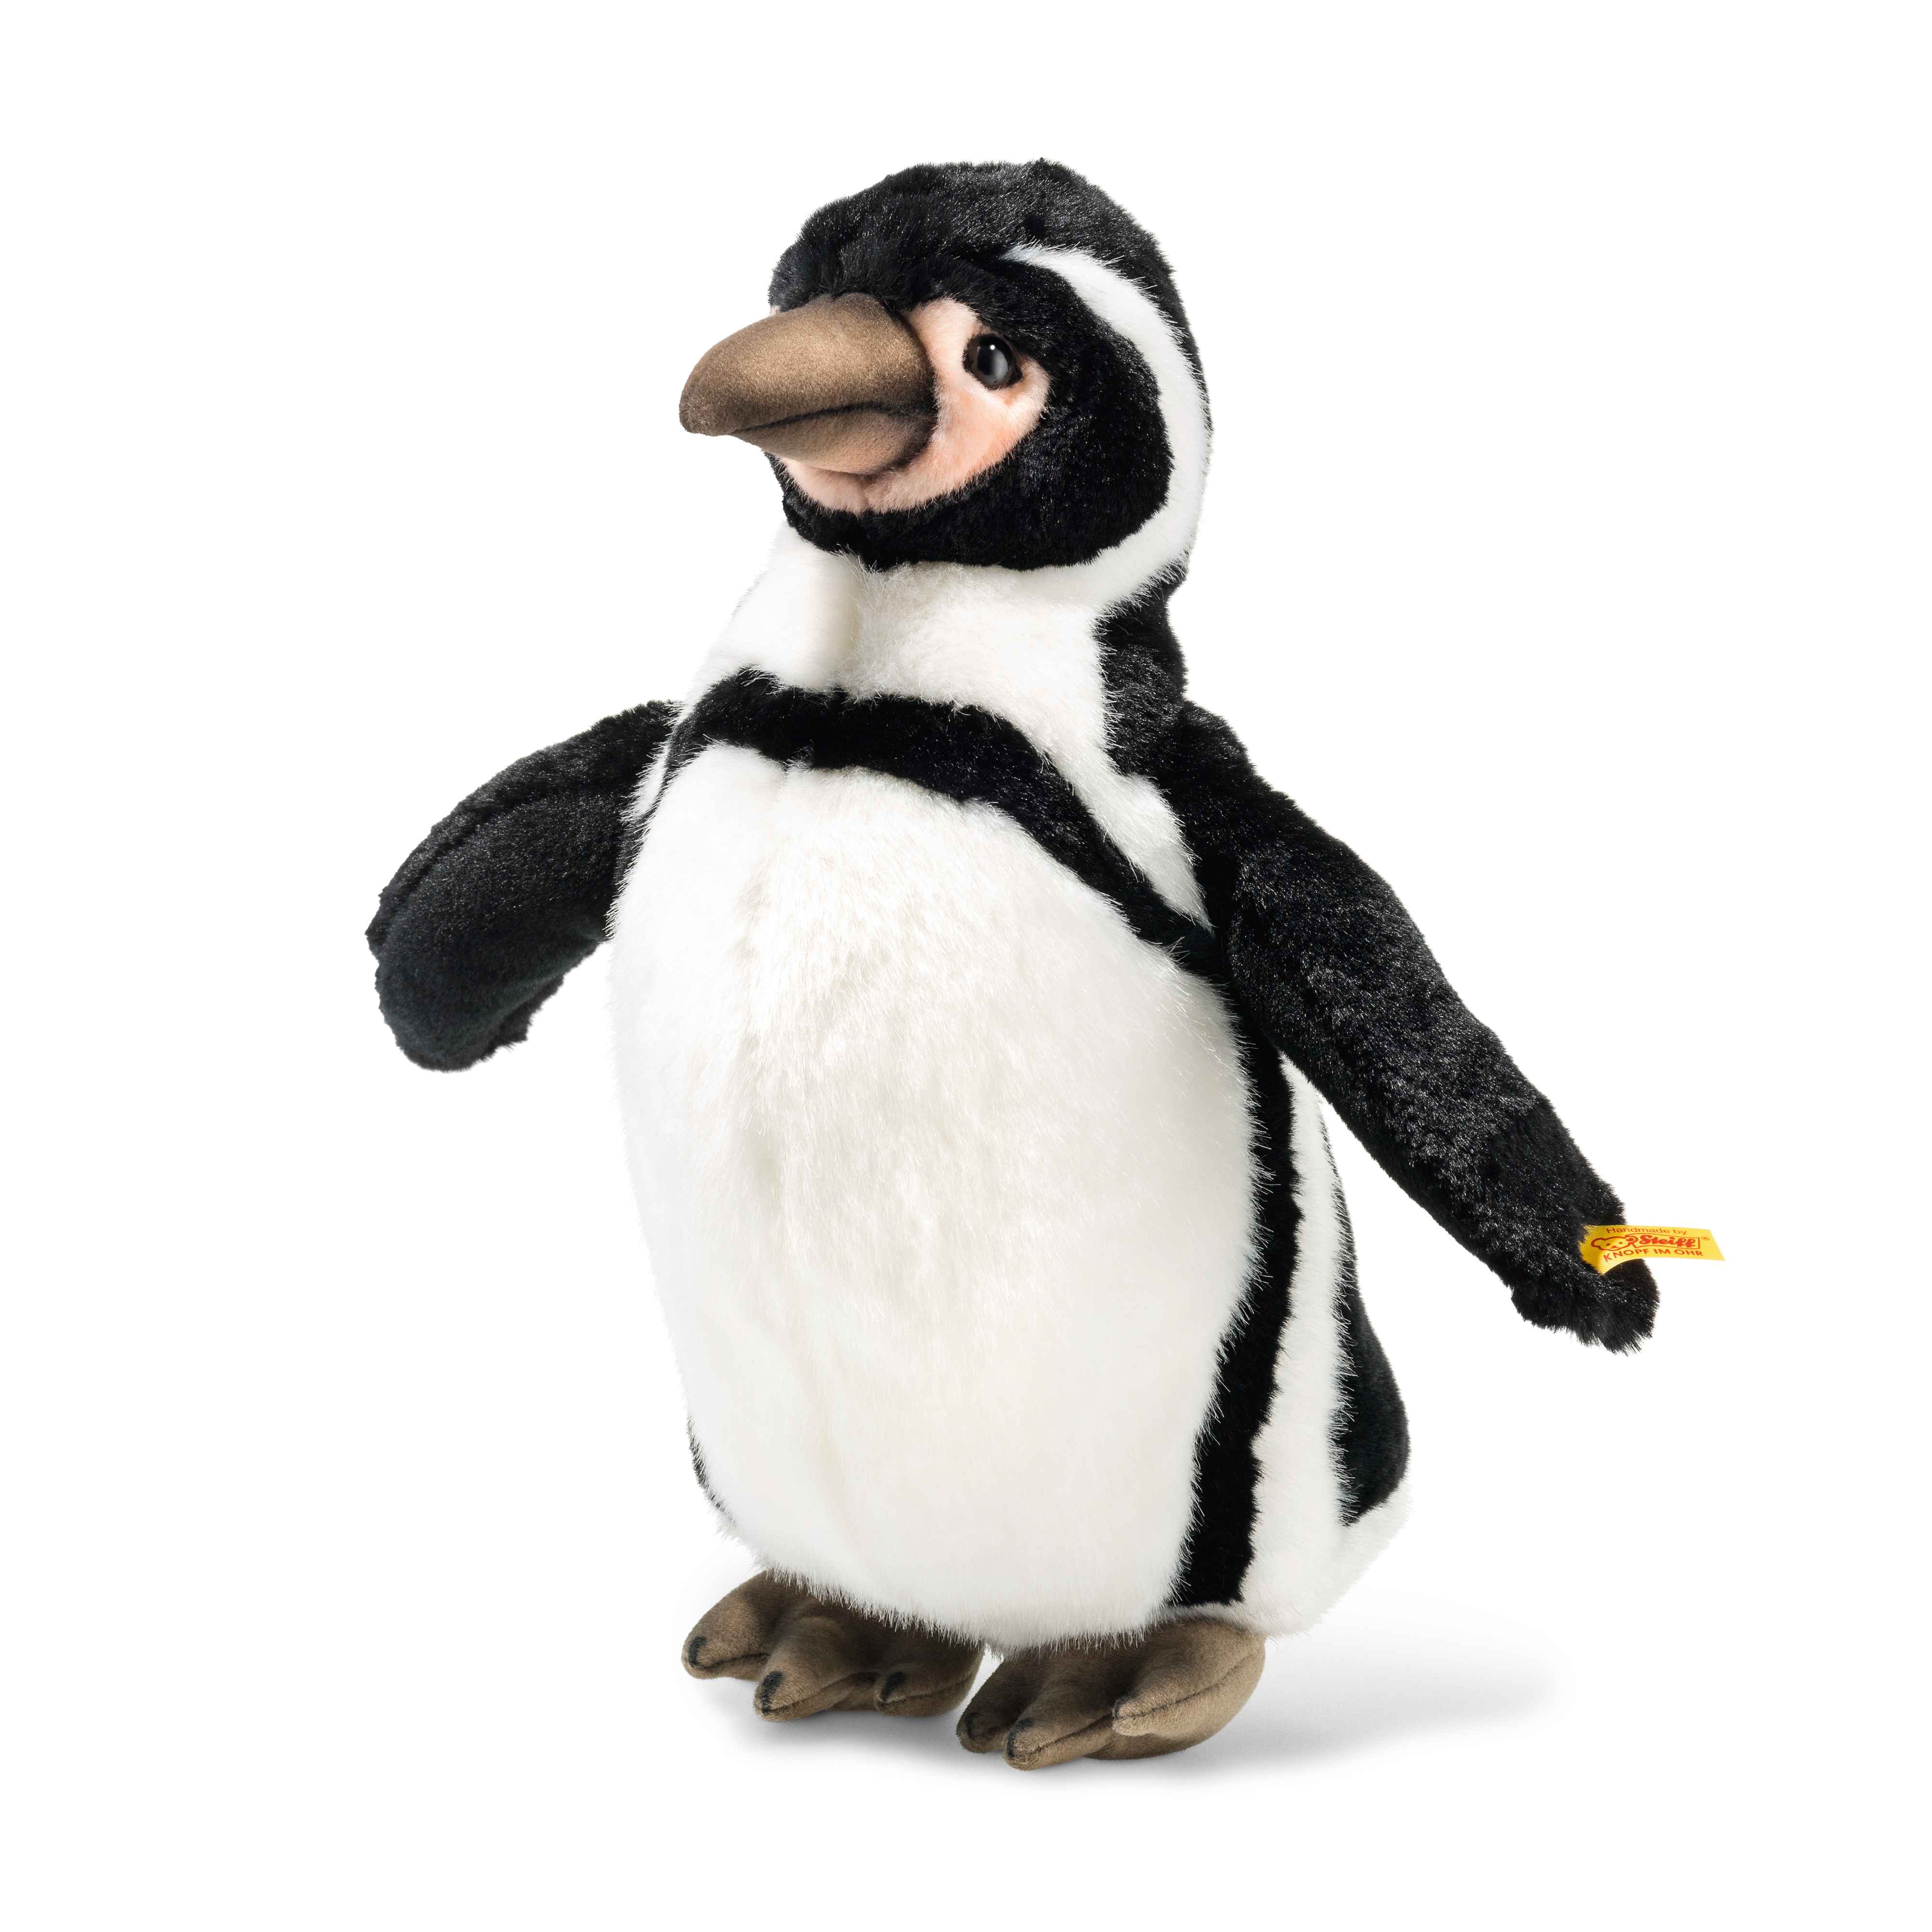 Steiff wճ}: Hummi Humboldt penguin